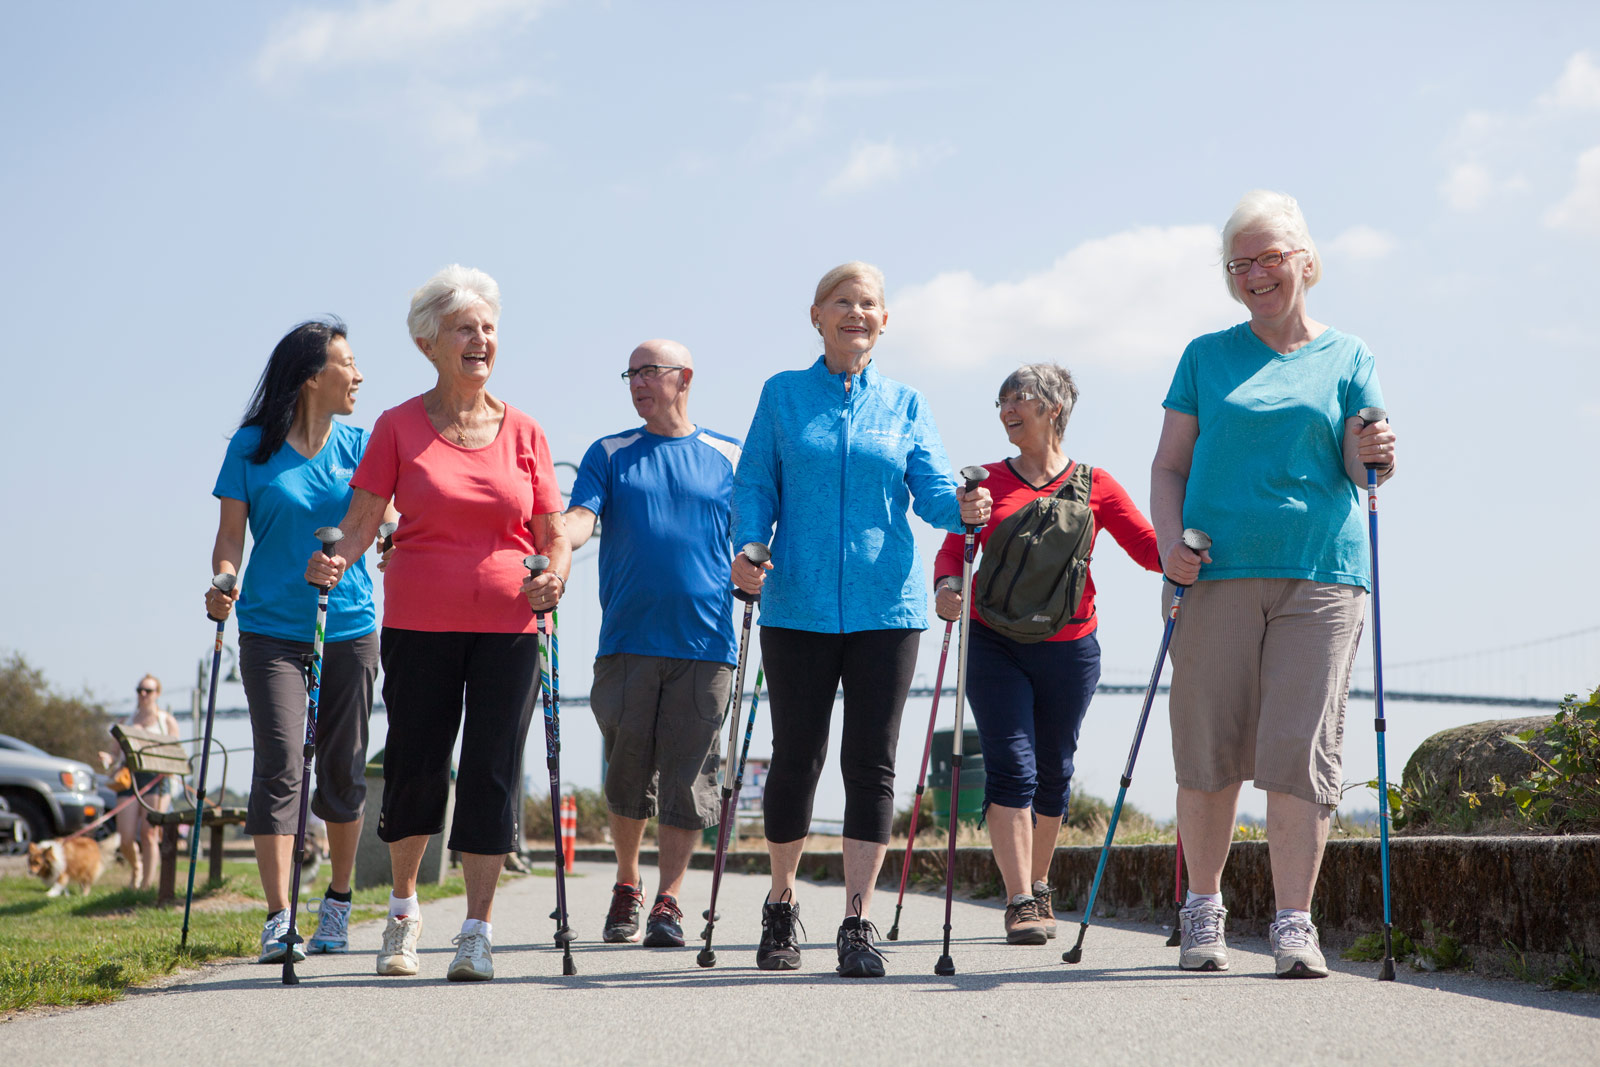 Effetti dell'allenamento al nordic walking sulla qualità della vita, l'equilibrio e la mobilità funzionale negli anziani: Uno studio clinico randomizzato